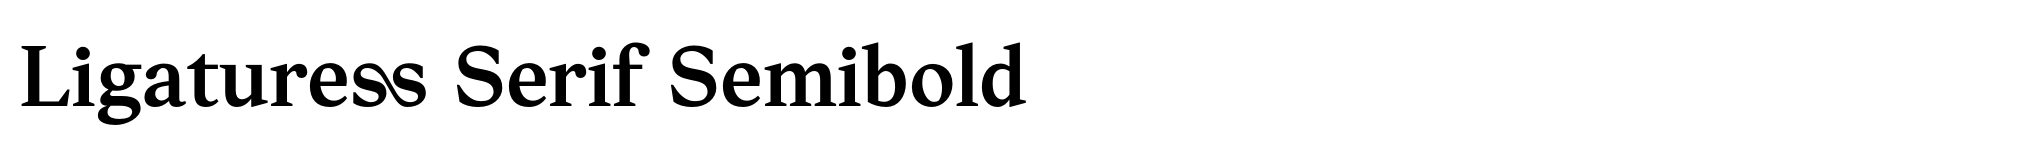 Ligaturess Serif Semibold image